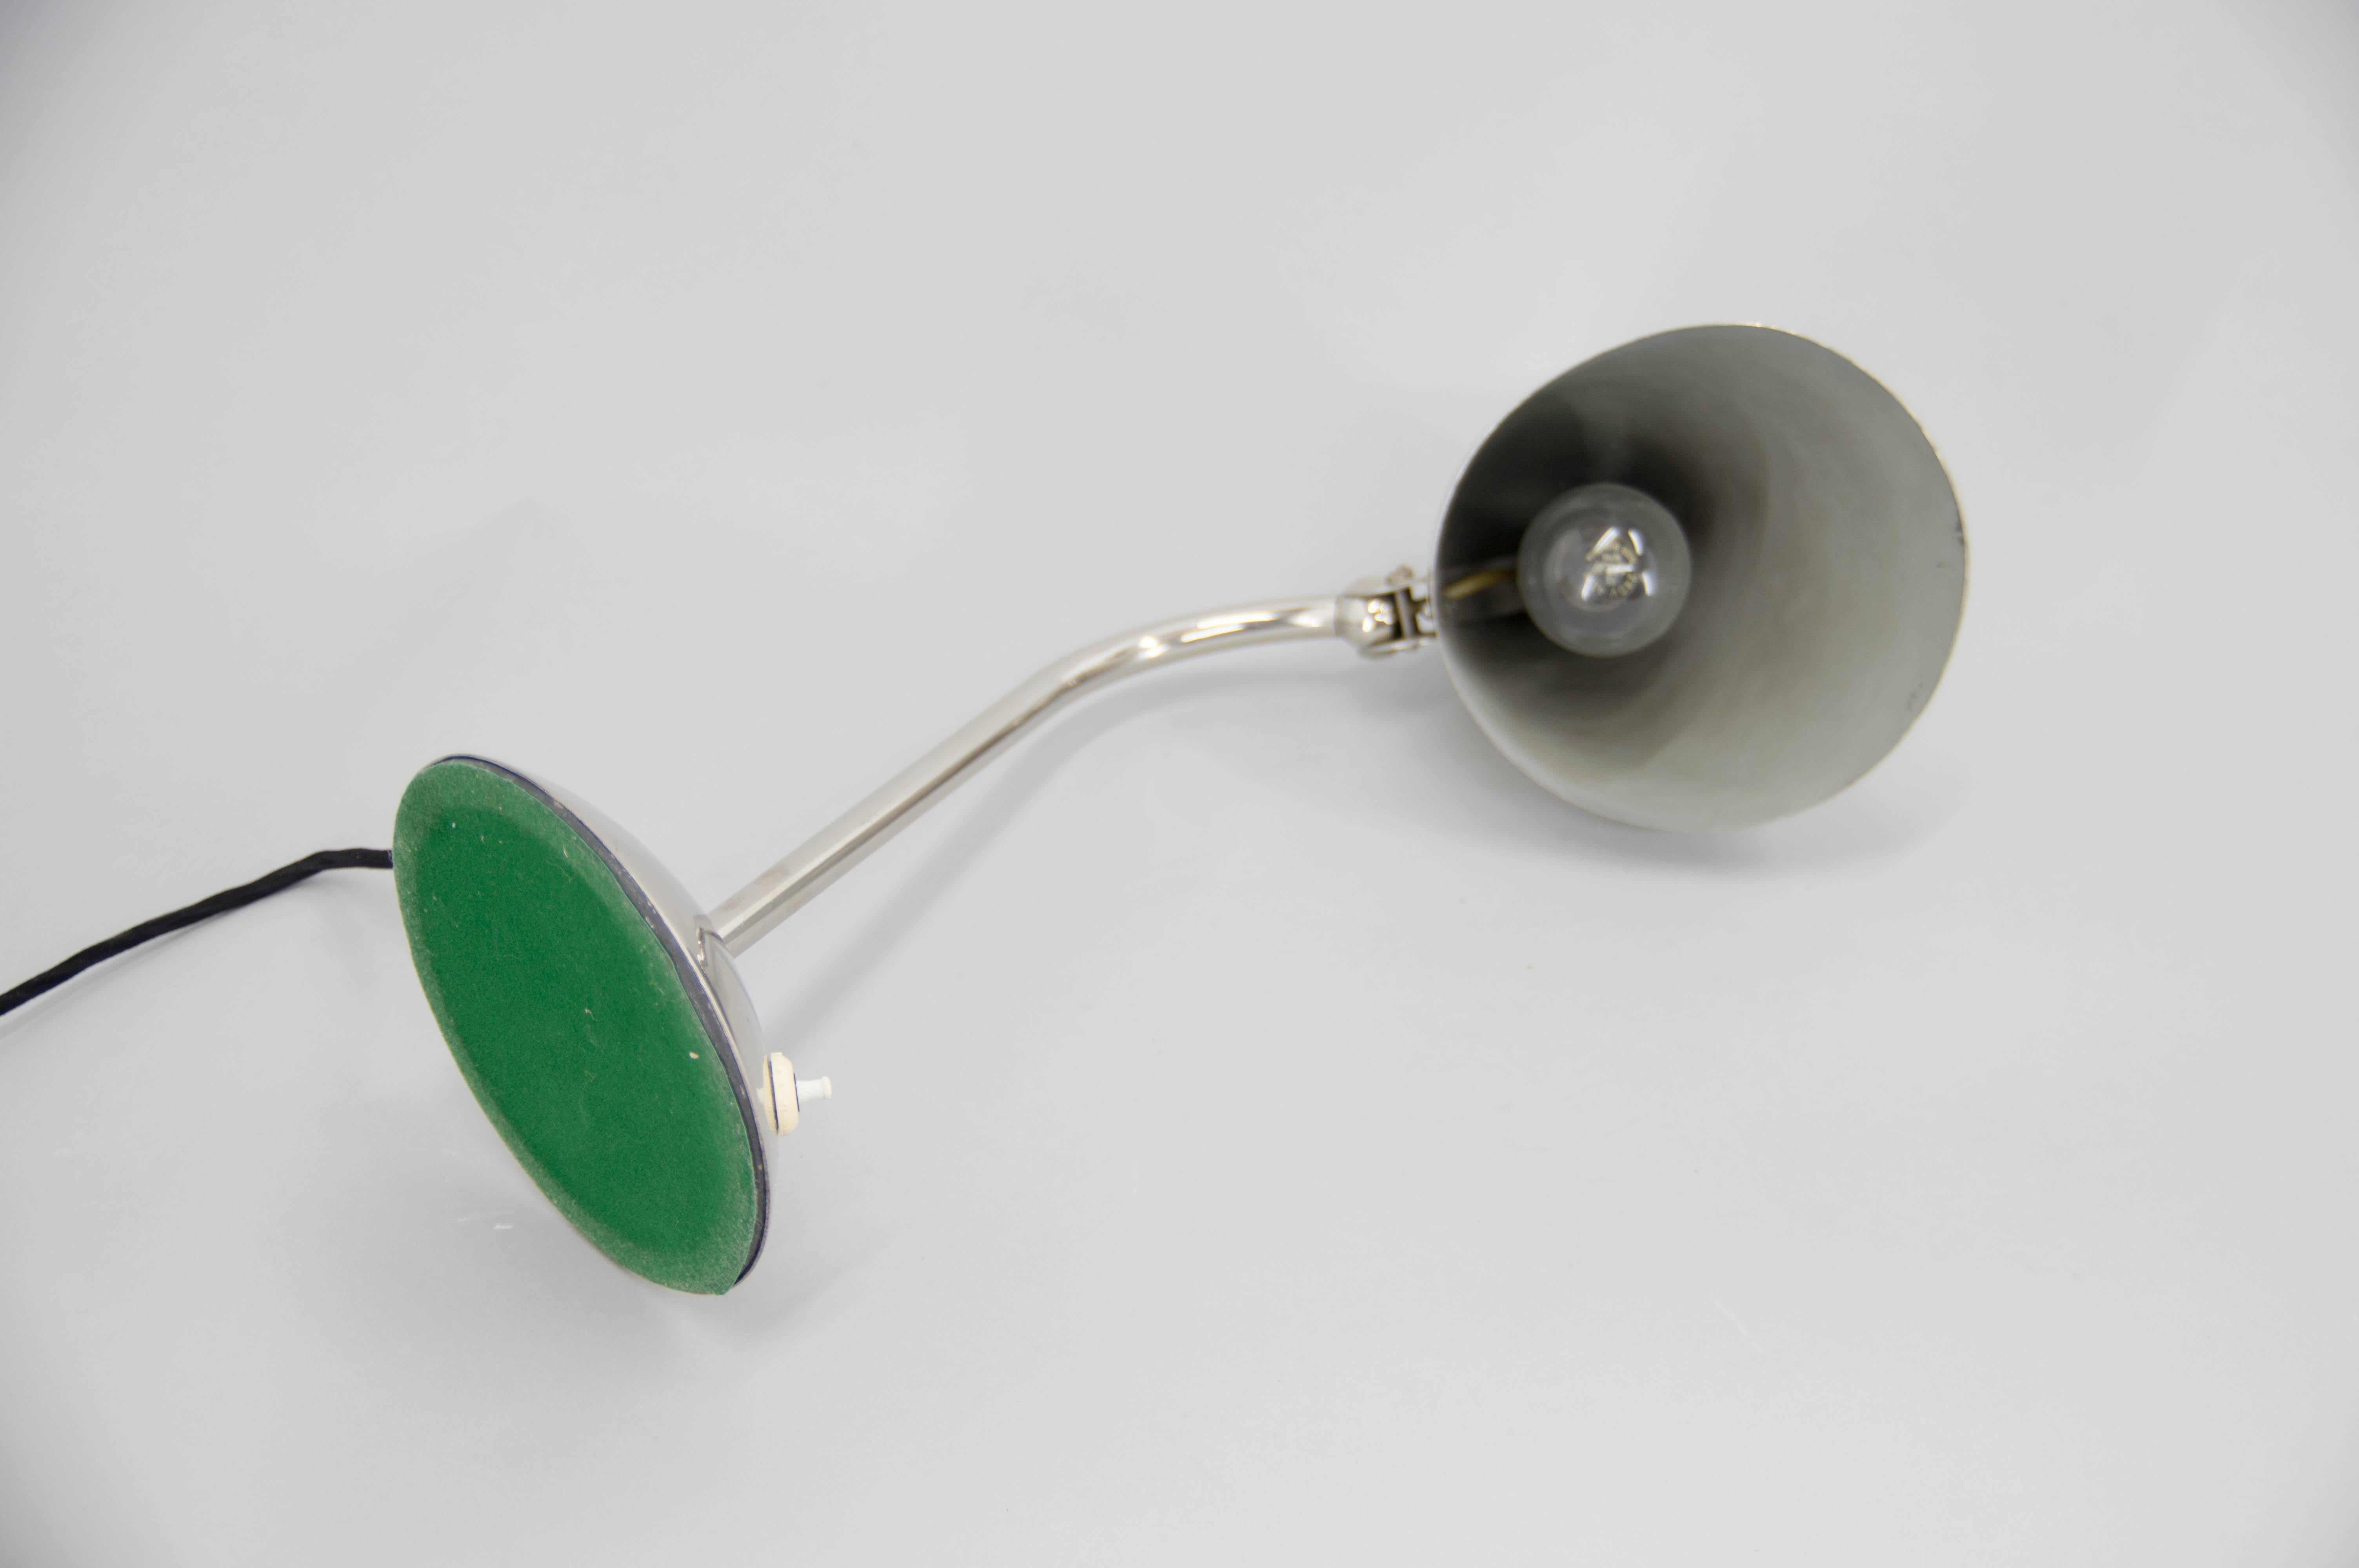 Funktionalistische / Bauhaus Flexible Tischlampe von Franta Anyz, 1930er Jahre (Mitte des 20. Jahrhunderts) im Angebot